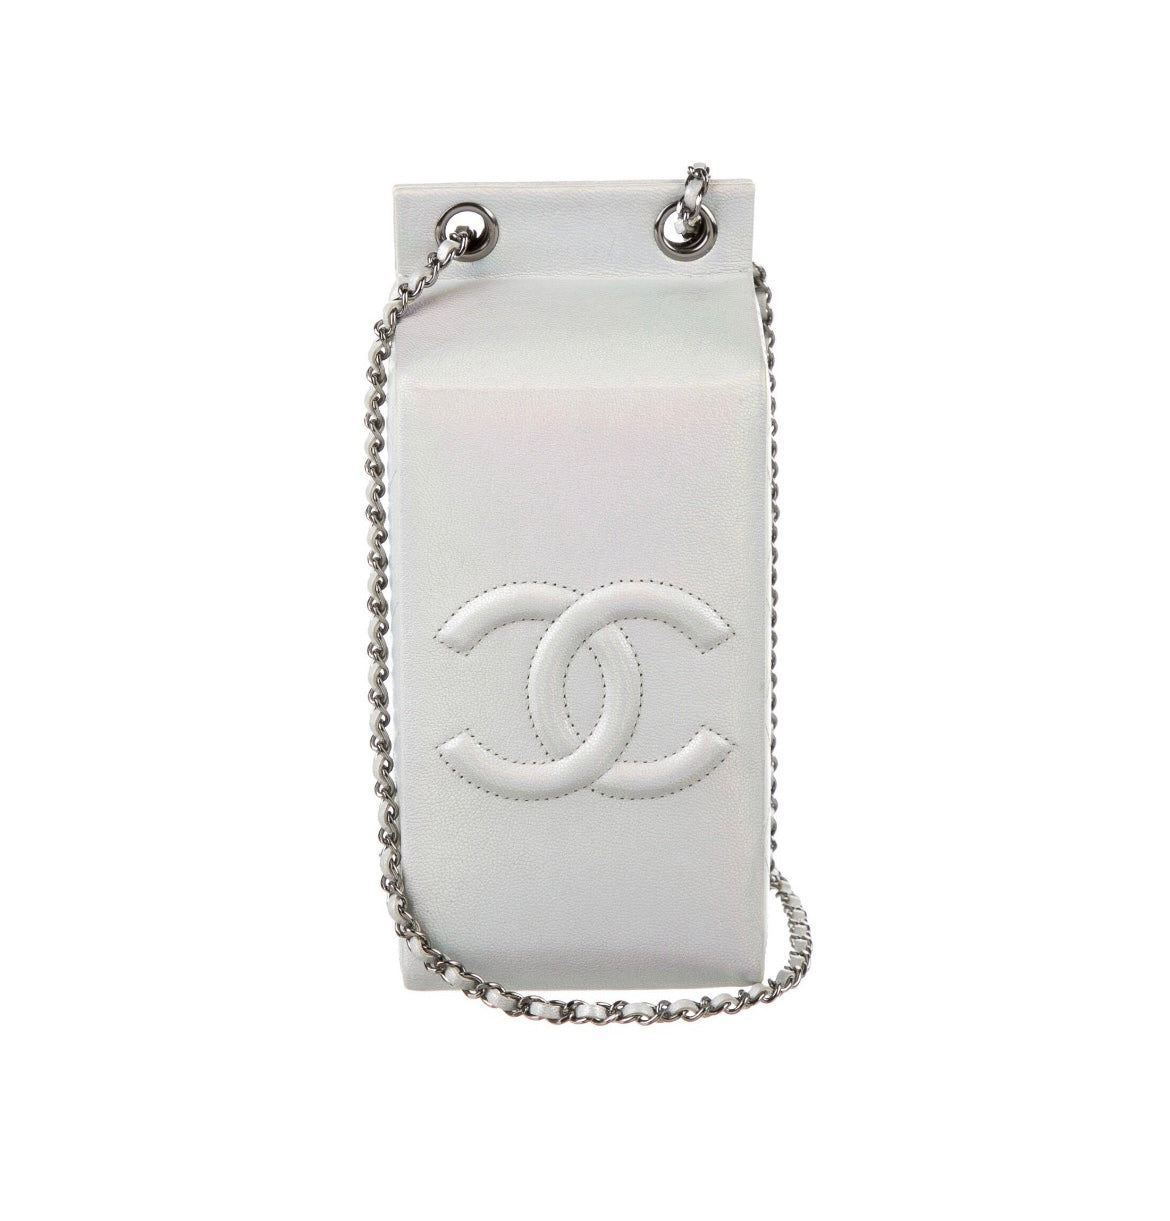 Lait de Coco 💗  Bags, Chanel purse, Chanel bag 2014